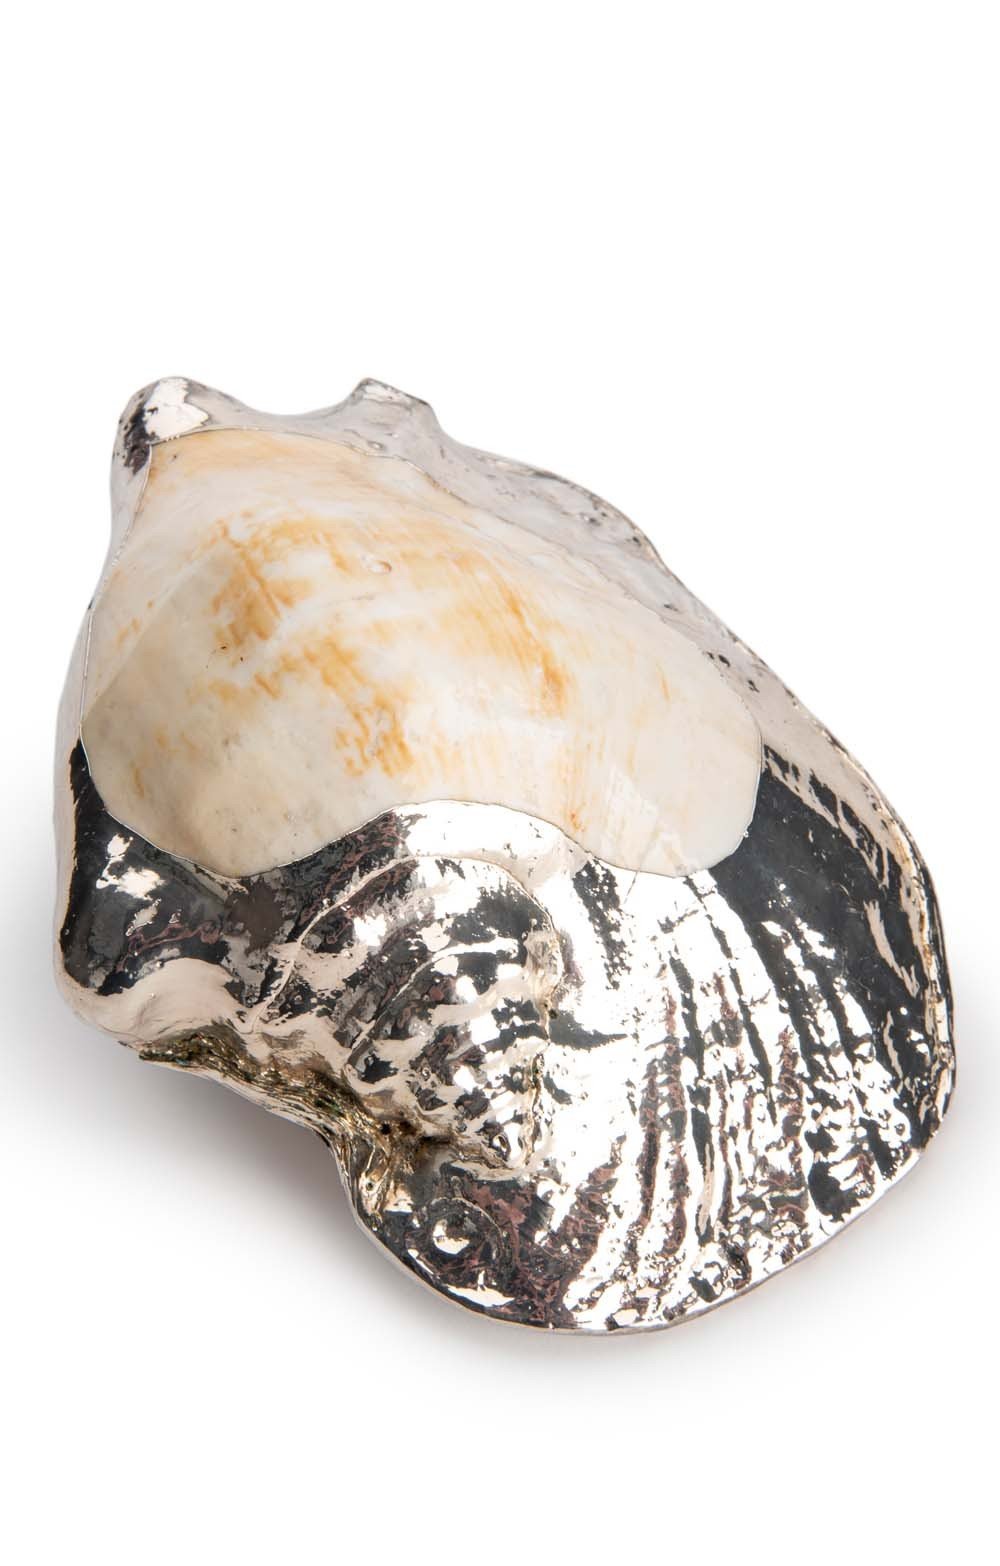  Silver Plated Seashells, Charonia Tritonis